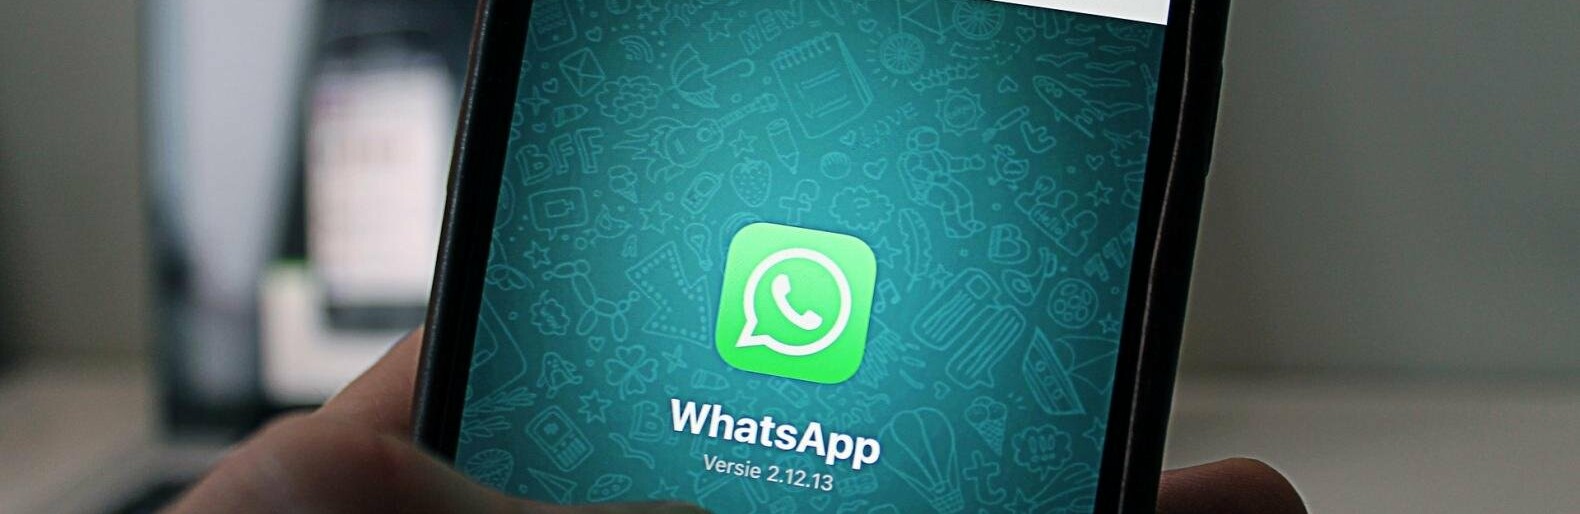     WhatsApp